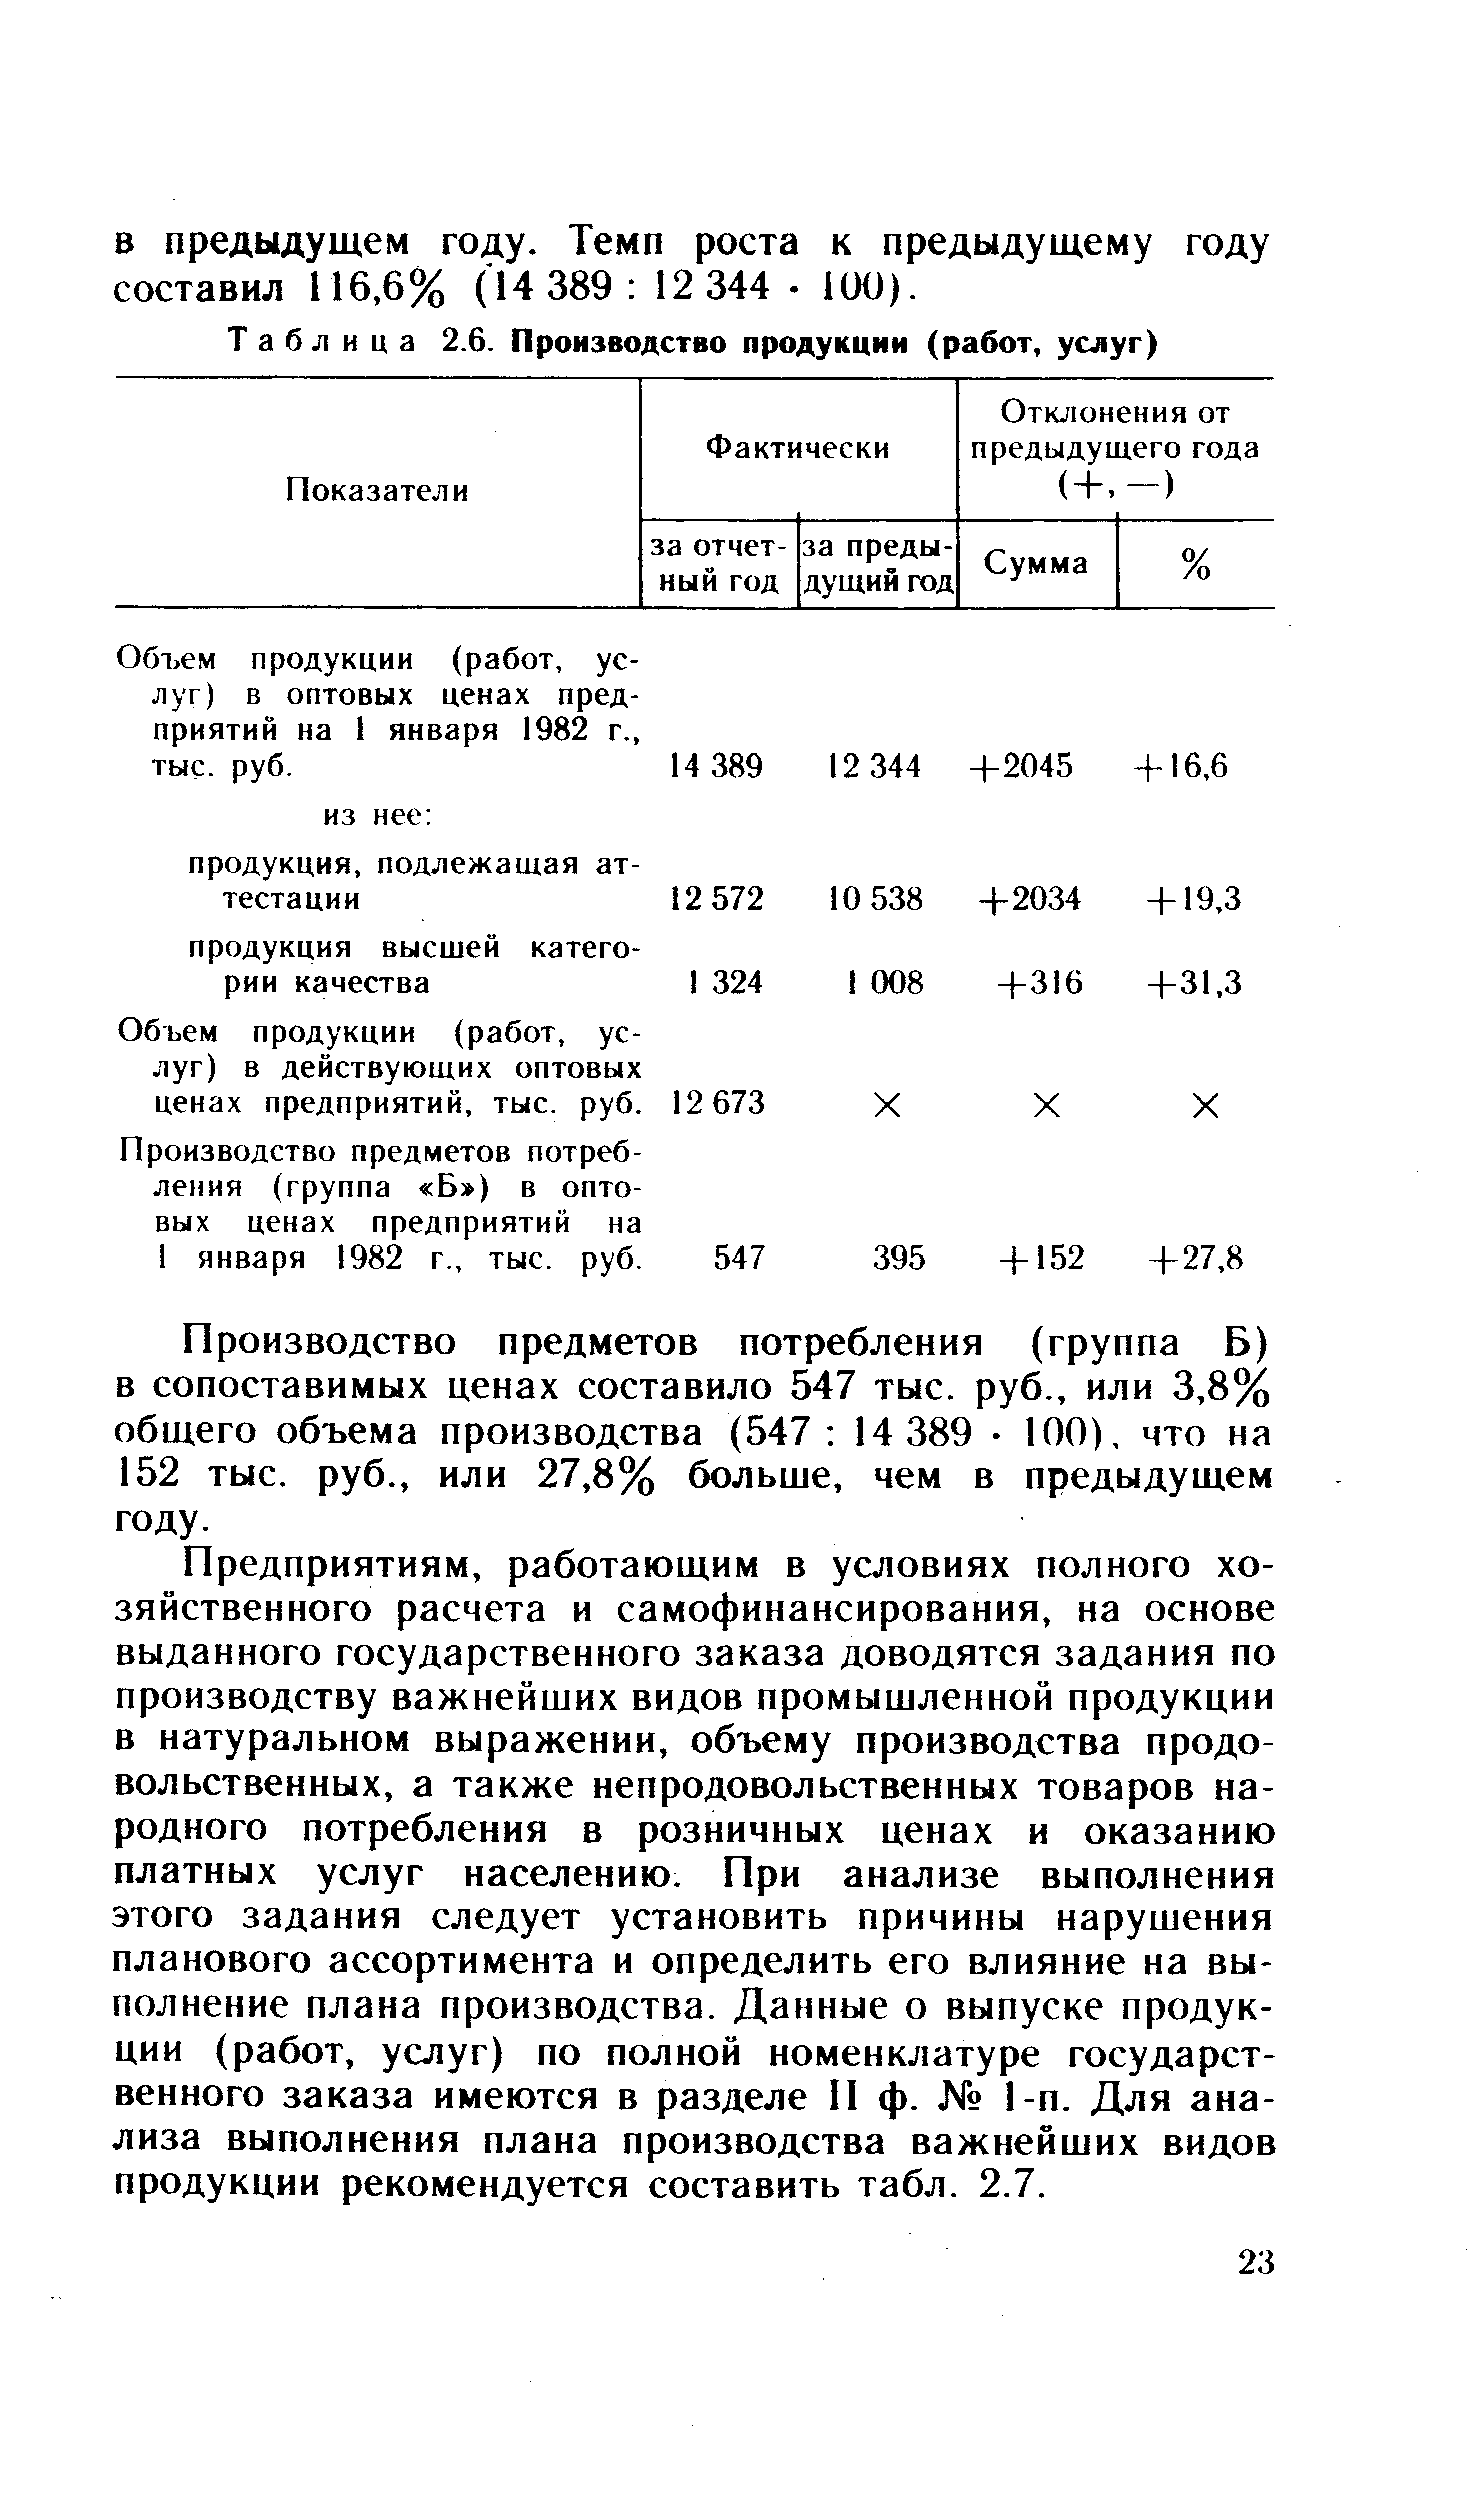 Объем продукции (работ, услуг) в оптовых ценах предприятий на 1 января 1982 г., тыс. руб.
